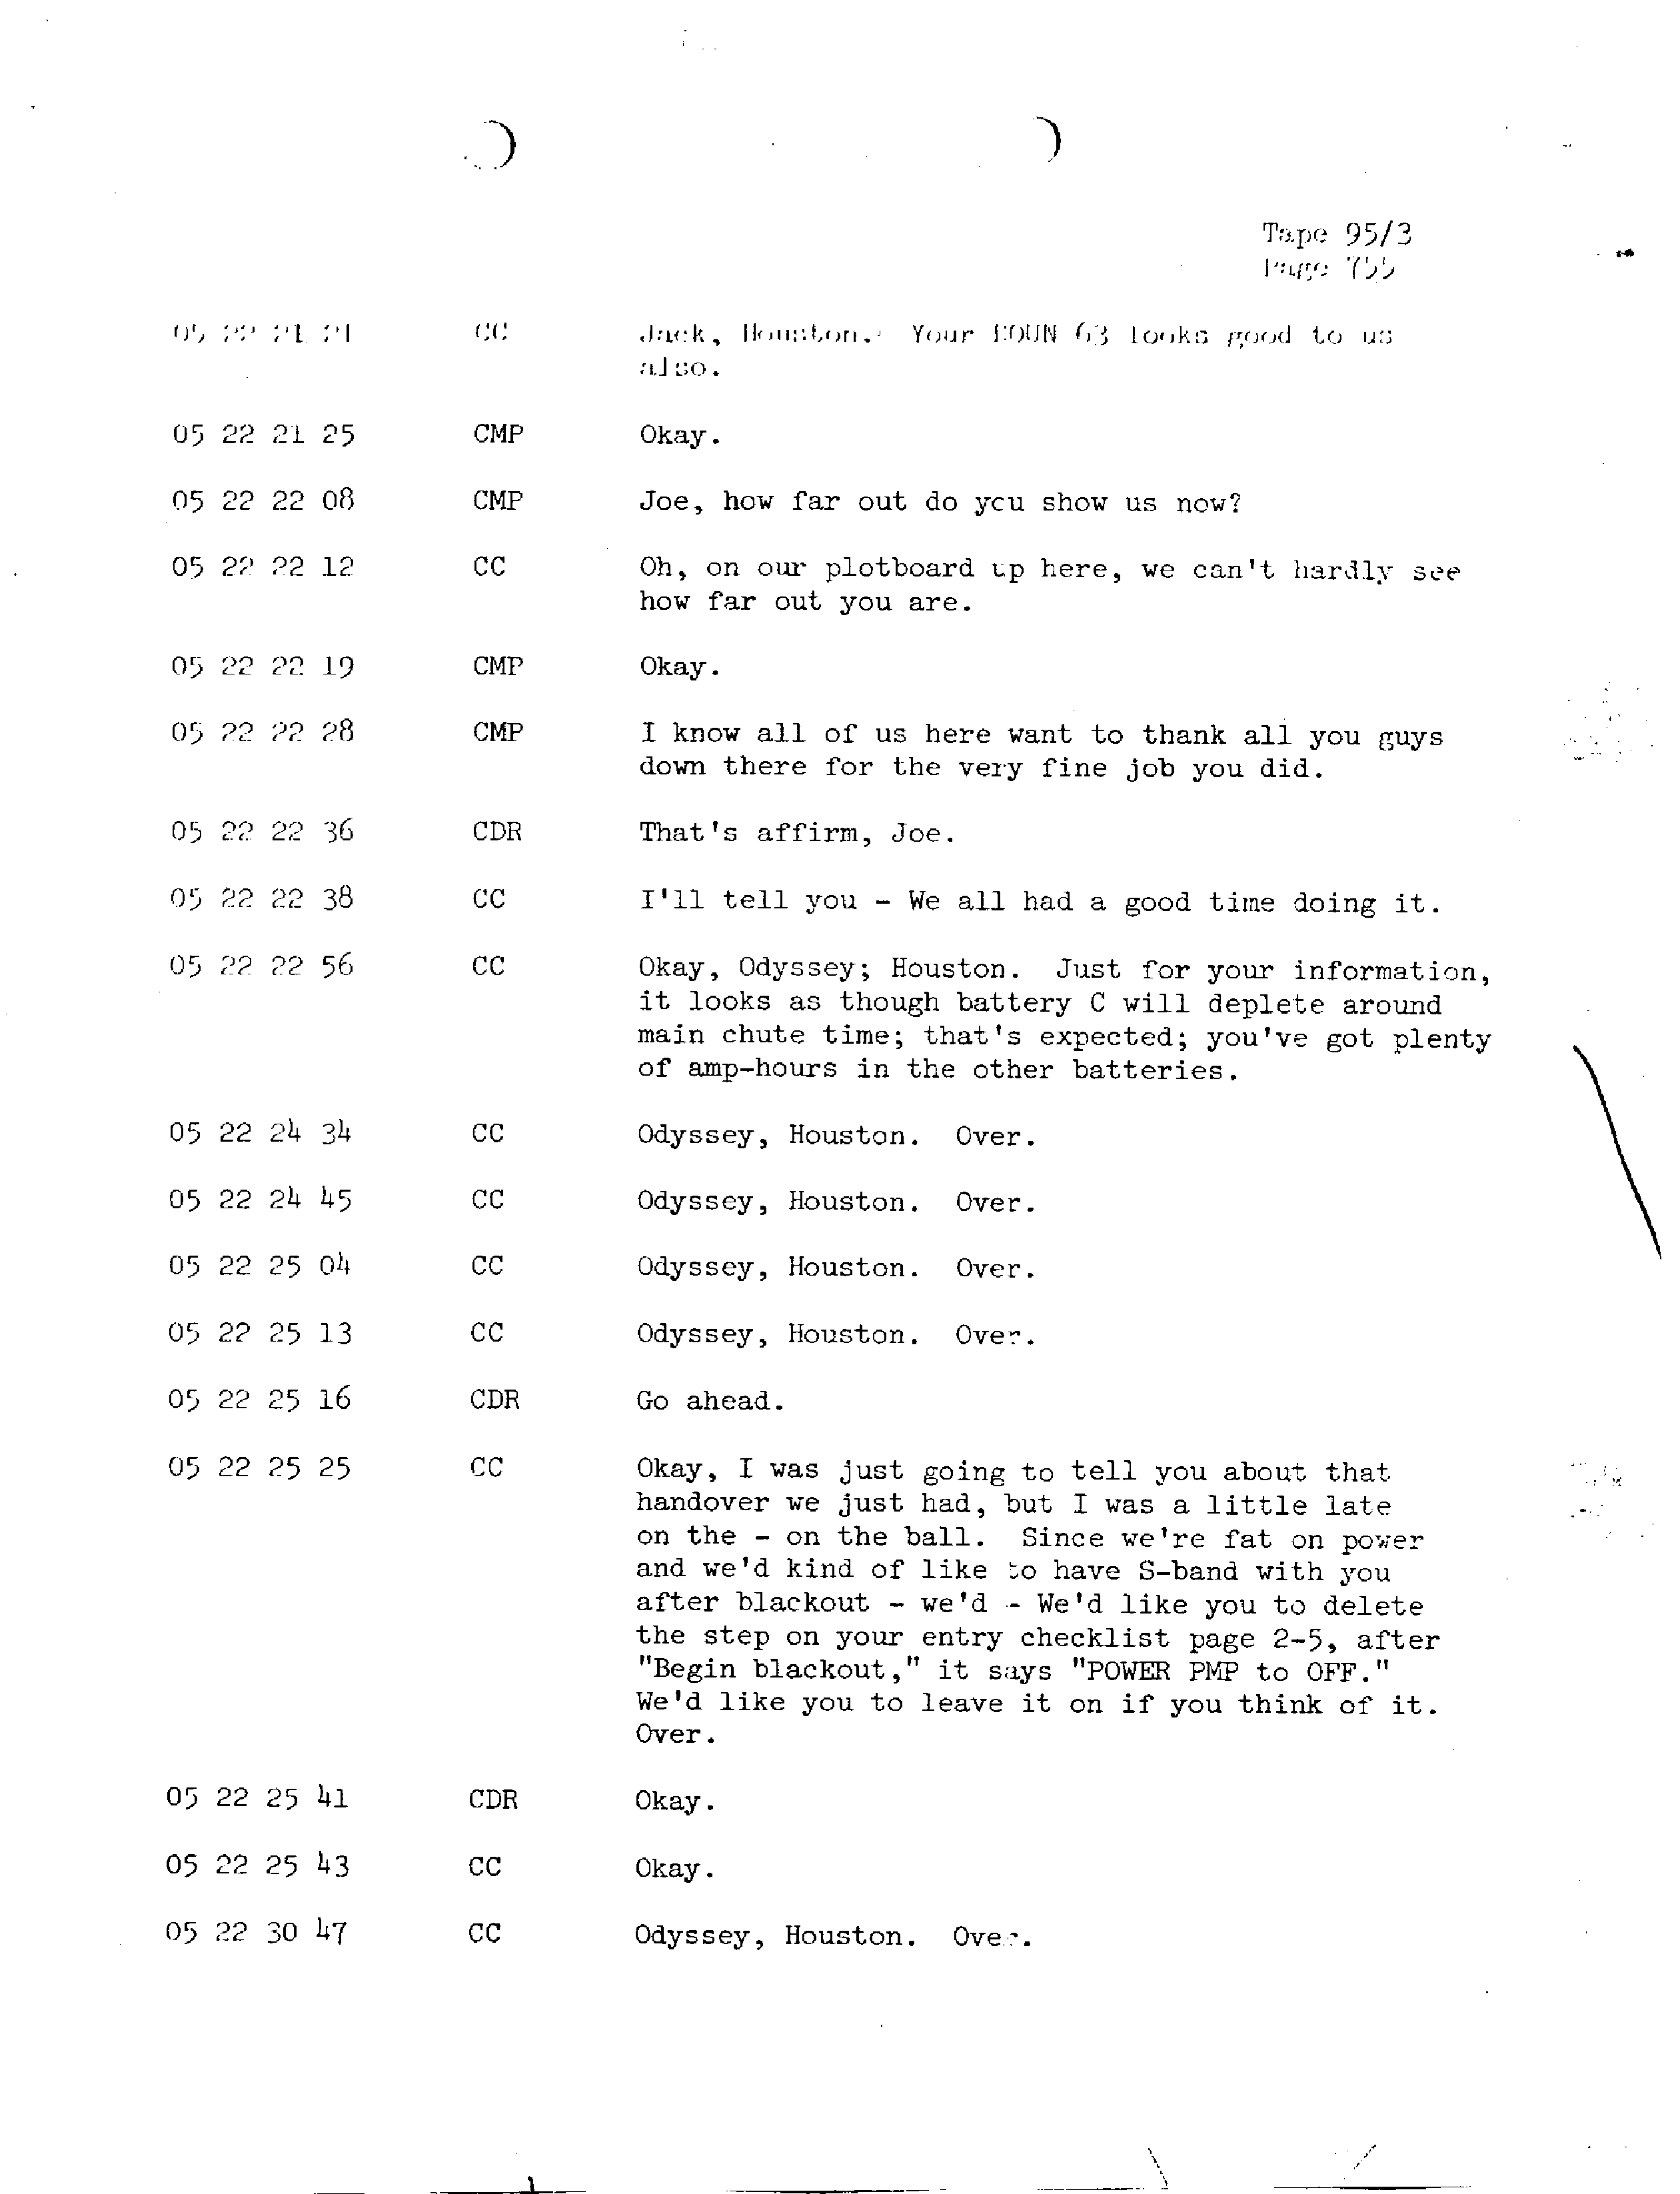 Page 762 of Apollo 13’s original transcript